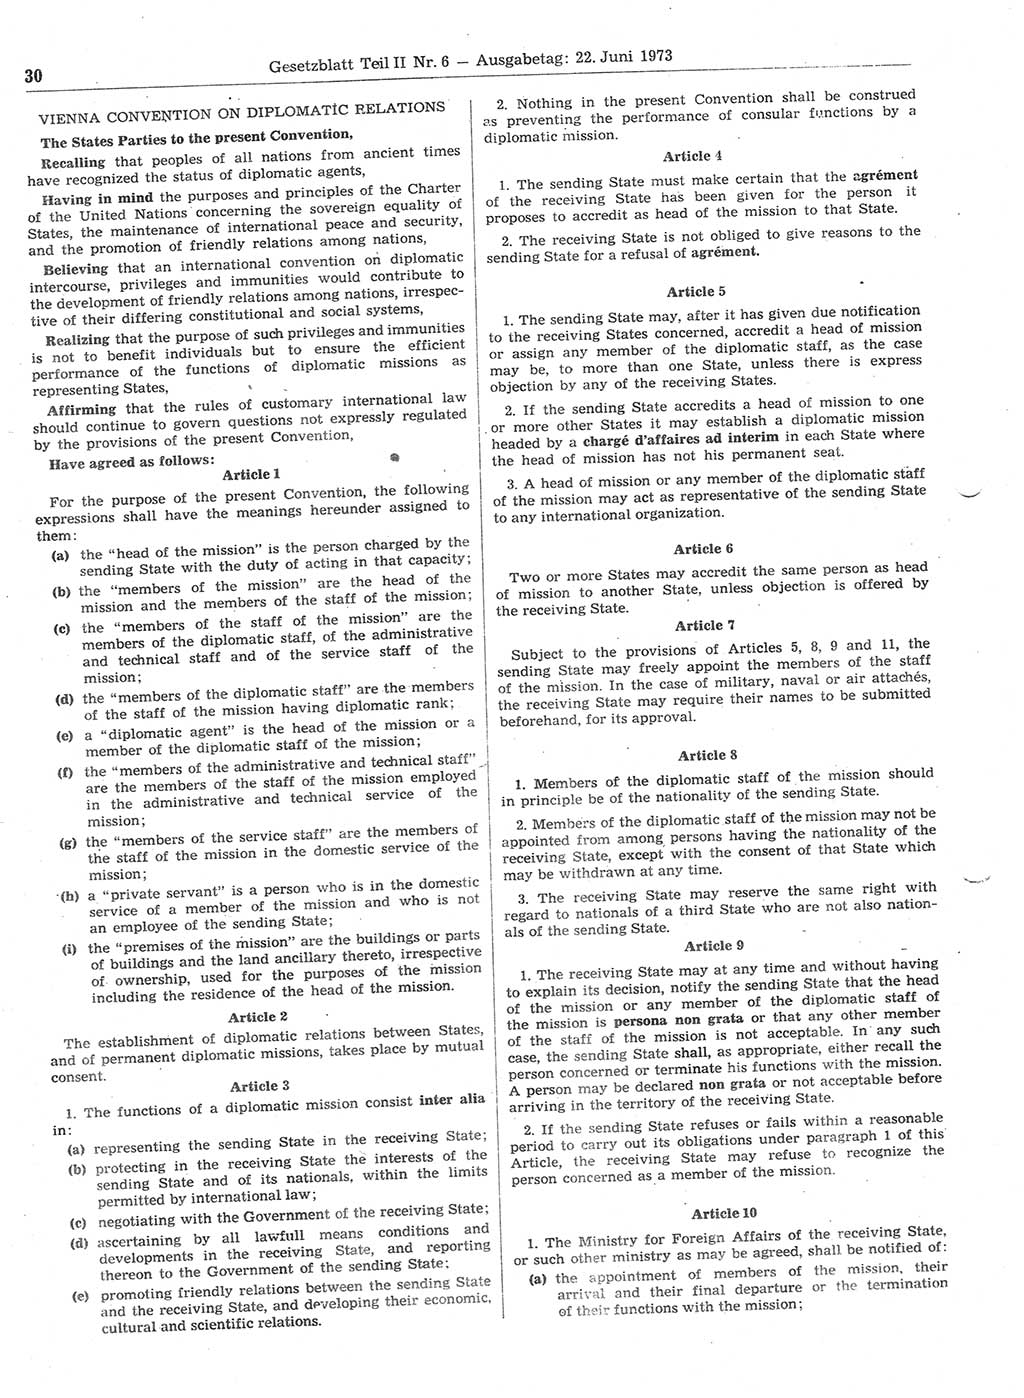 Gesetzblatt (GBl.) der Deutschen Demokratischen Republik (DDR) Teil ⅠⅠ 1973, Seite 30 (GBl. DDR ⅠⅠ 1973, S. 30)